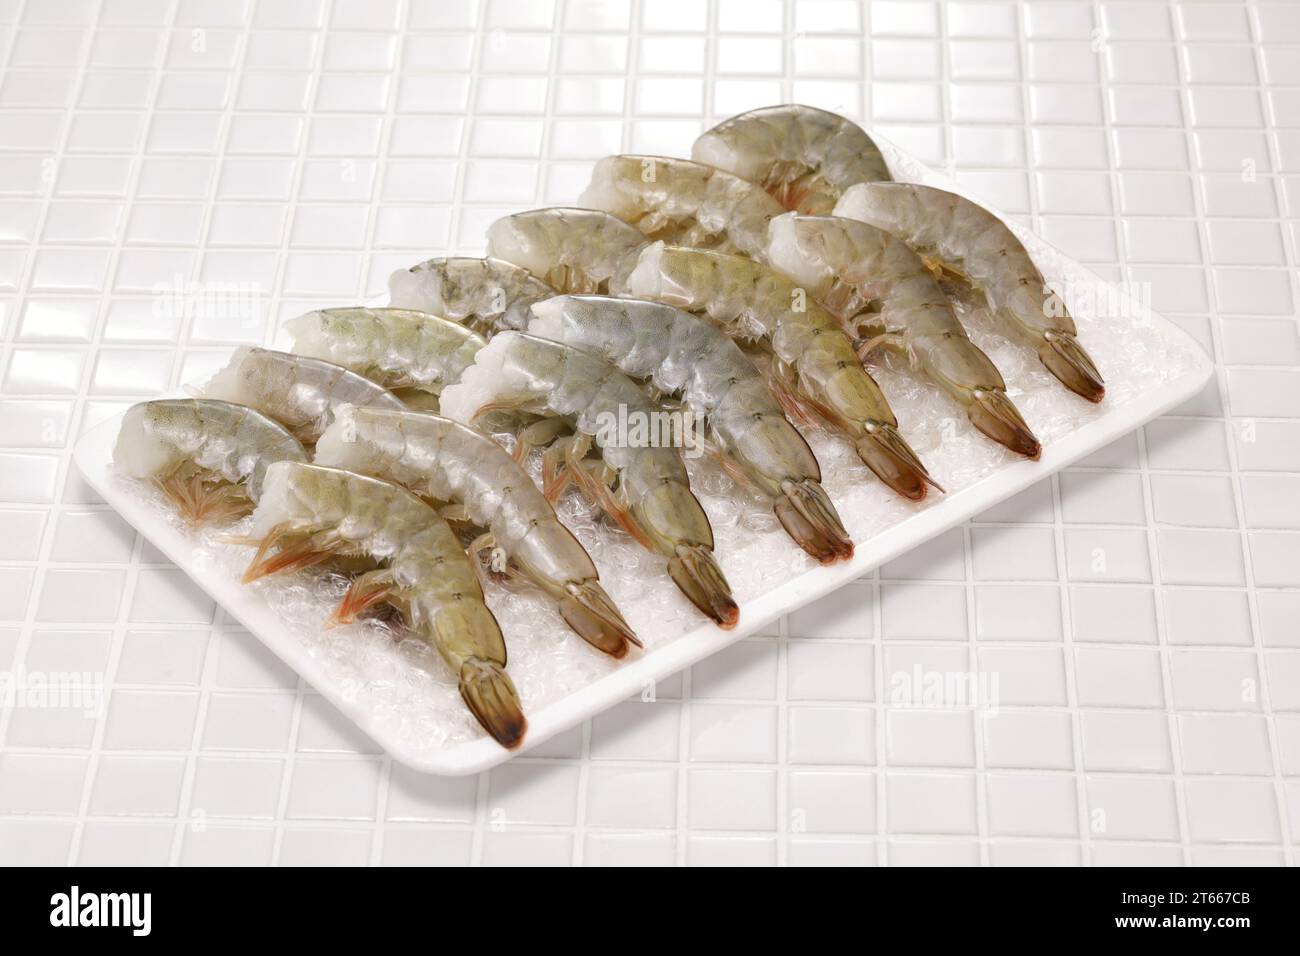 Headless frozen whiteleg shrimp, Ebi fry (Japanese fried shrimp) ingredient Stock Photo